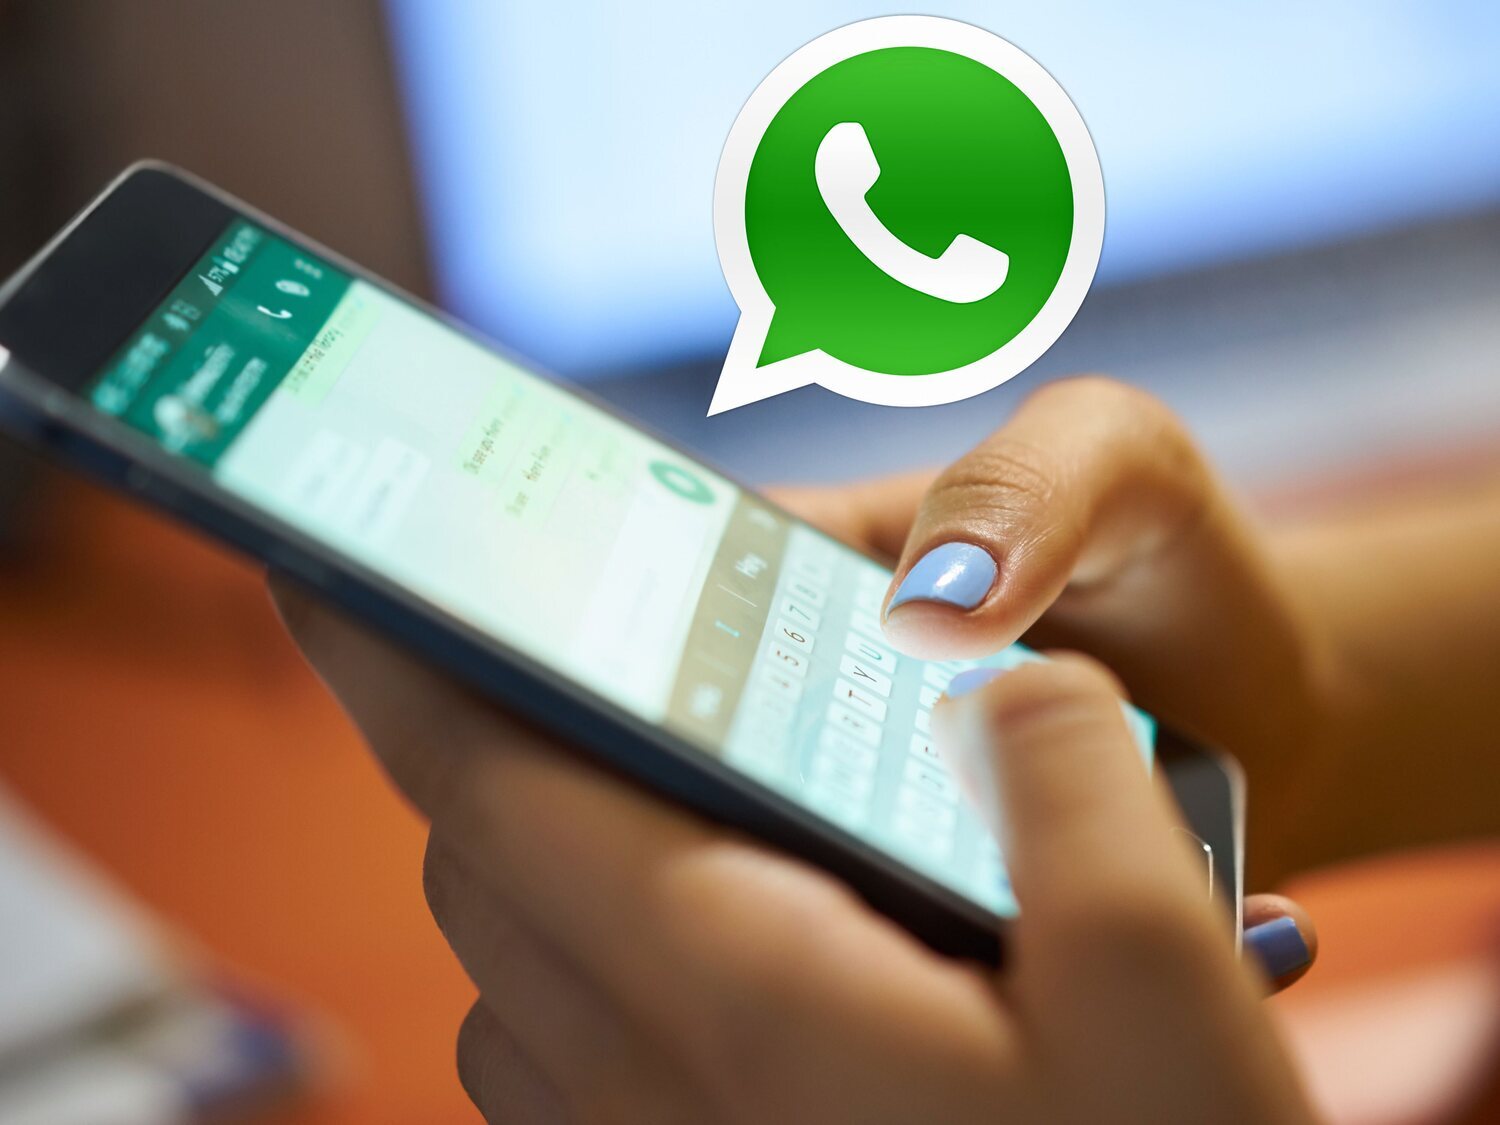 El truco para capturar una conversación completa en WhatsApp en una sola imagen